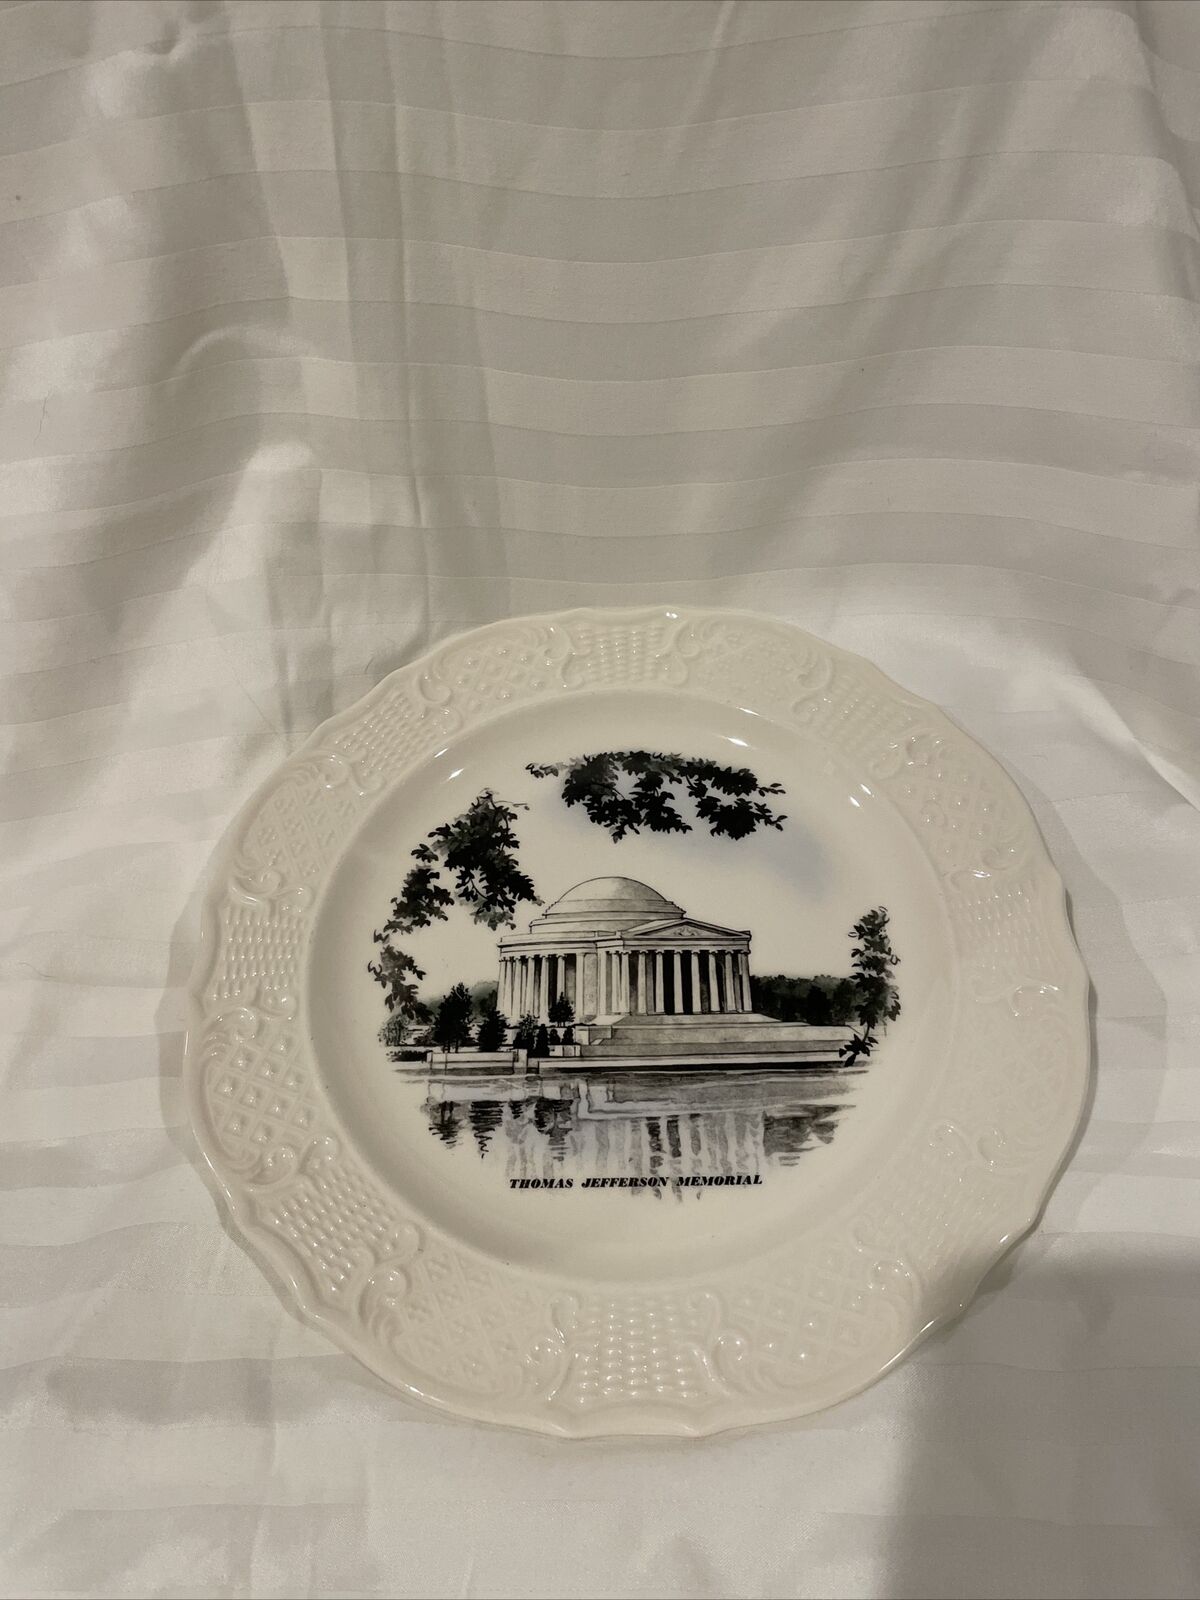 Jefferson Memorial Plate Rare Delano Studios Hand Colored 1962 Ironstone Plate